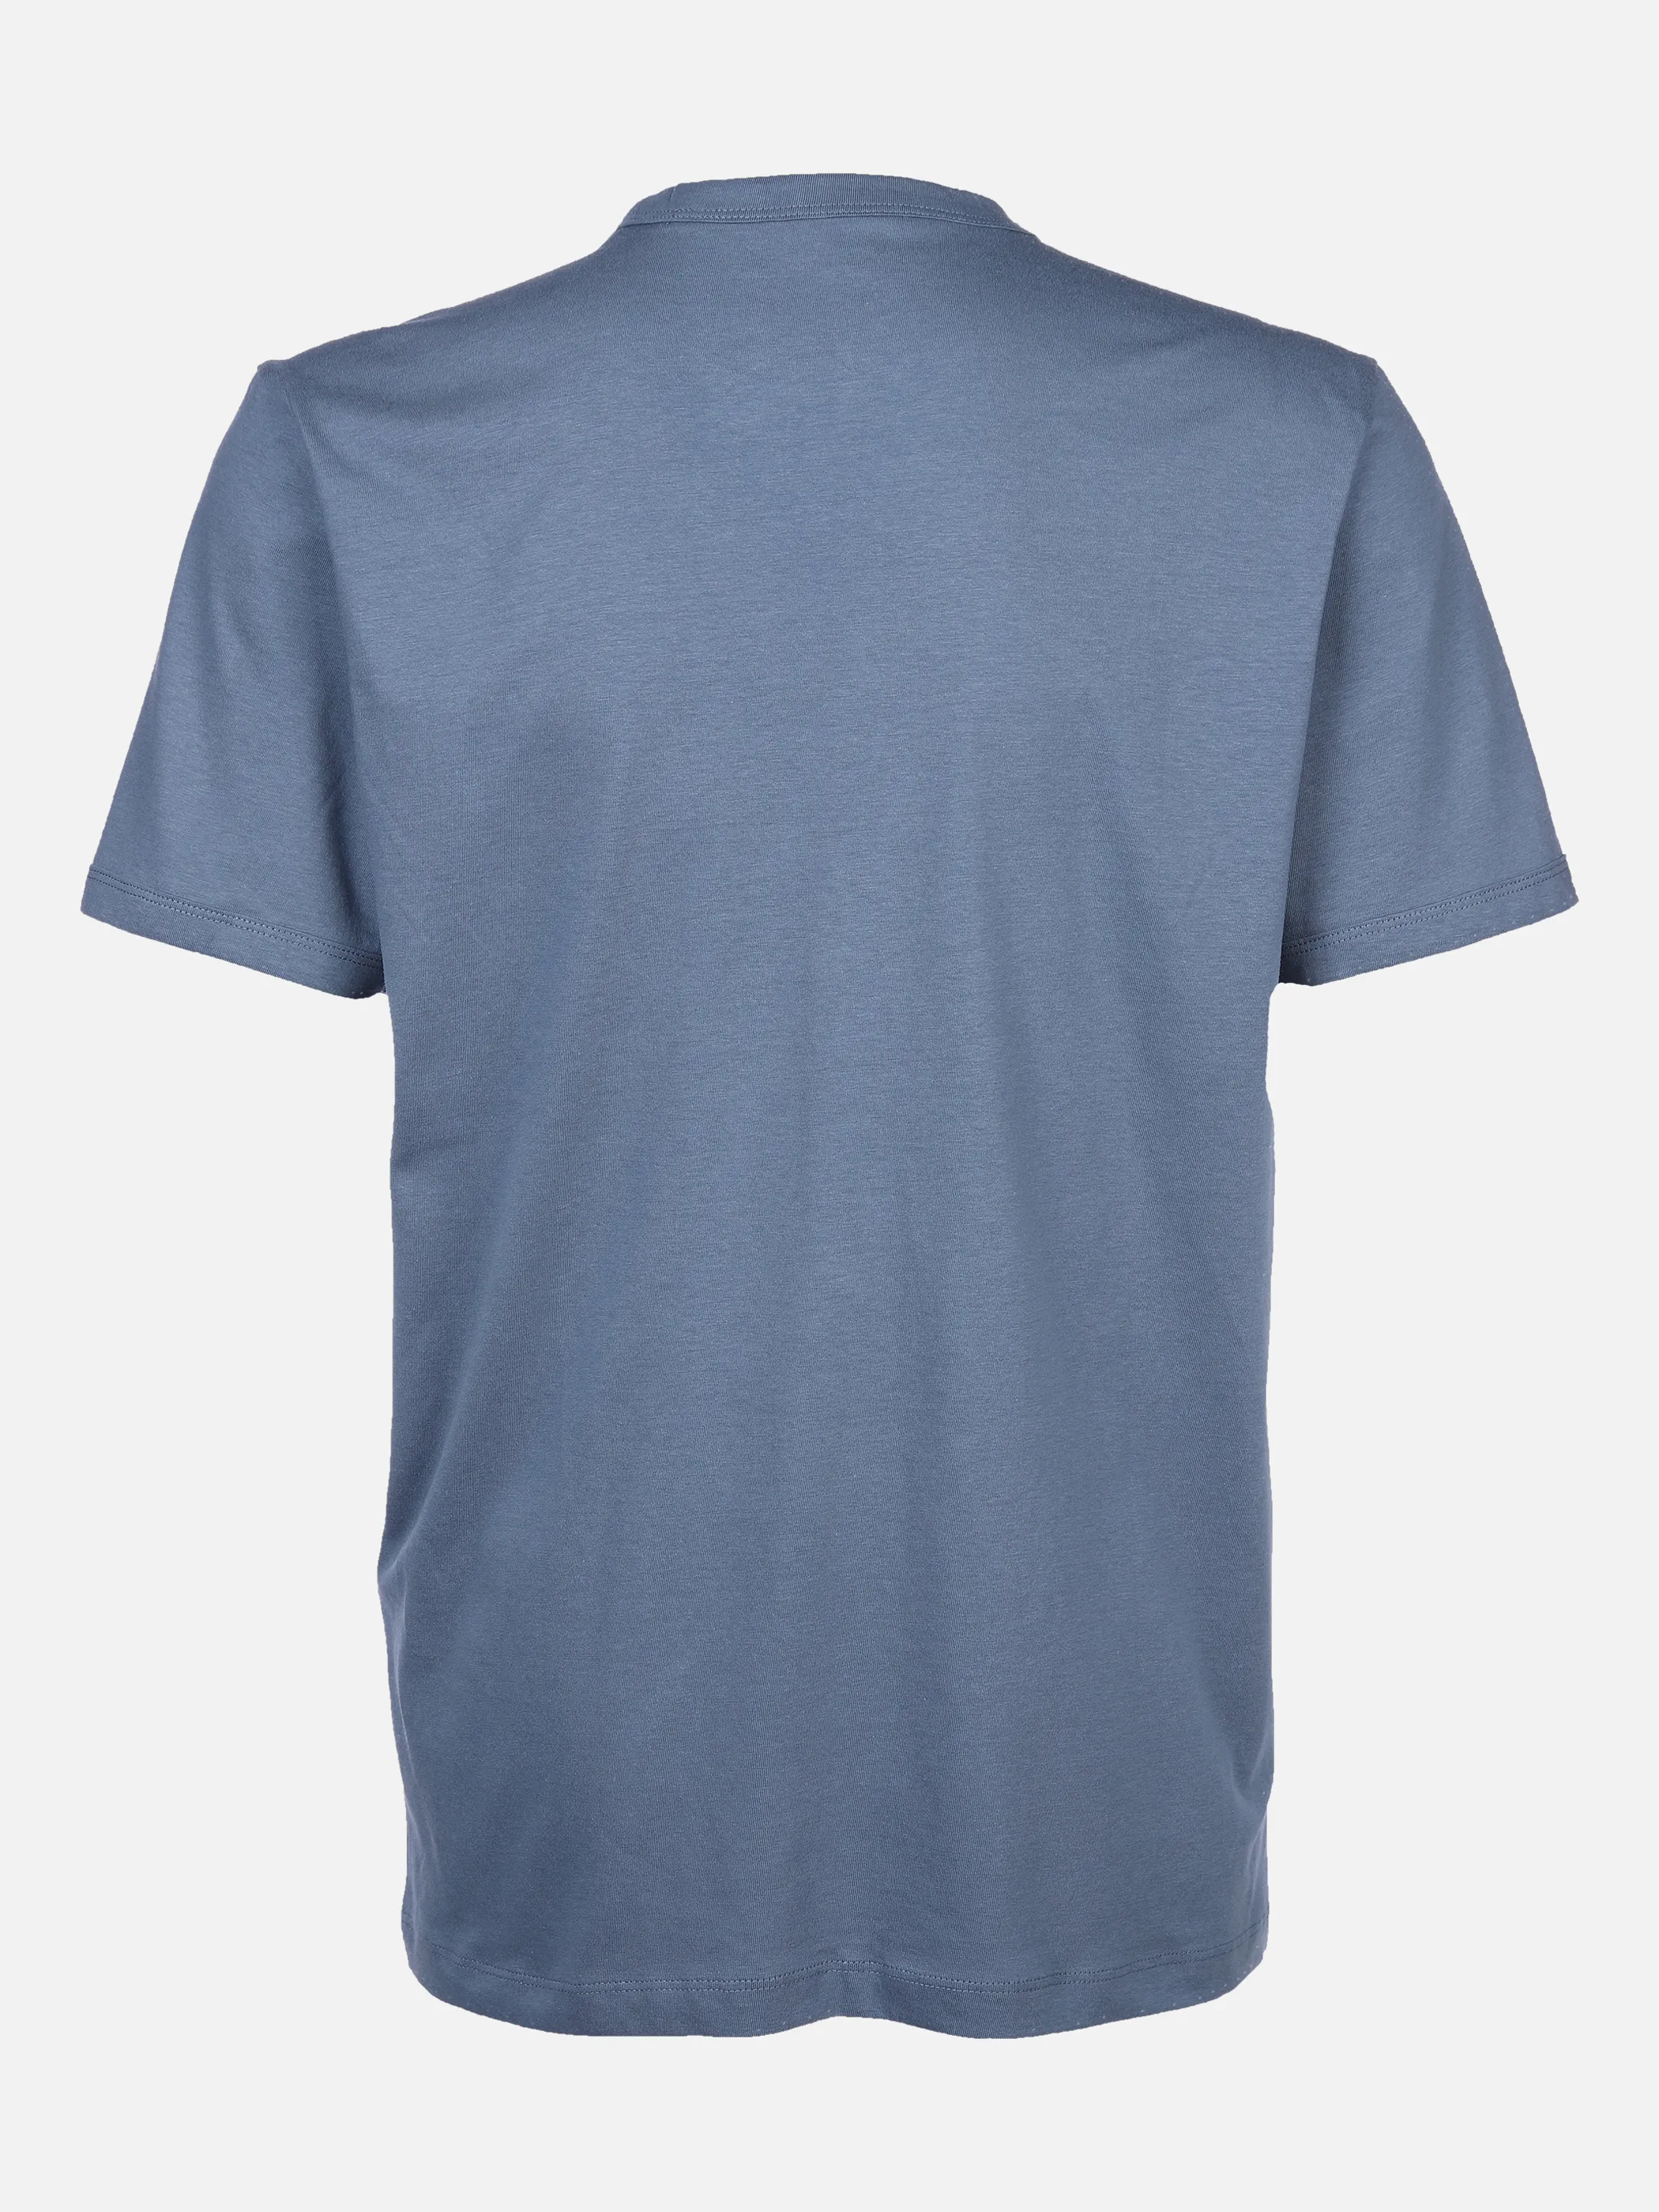 Tom Tailor 1032906 printed tshirt Blau 869524 10877 2